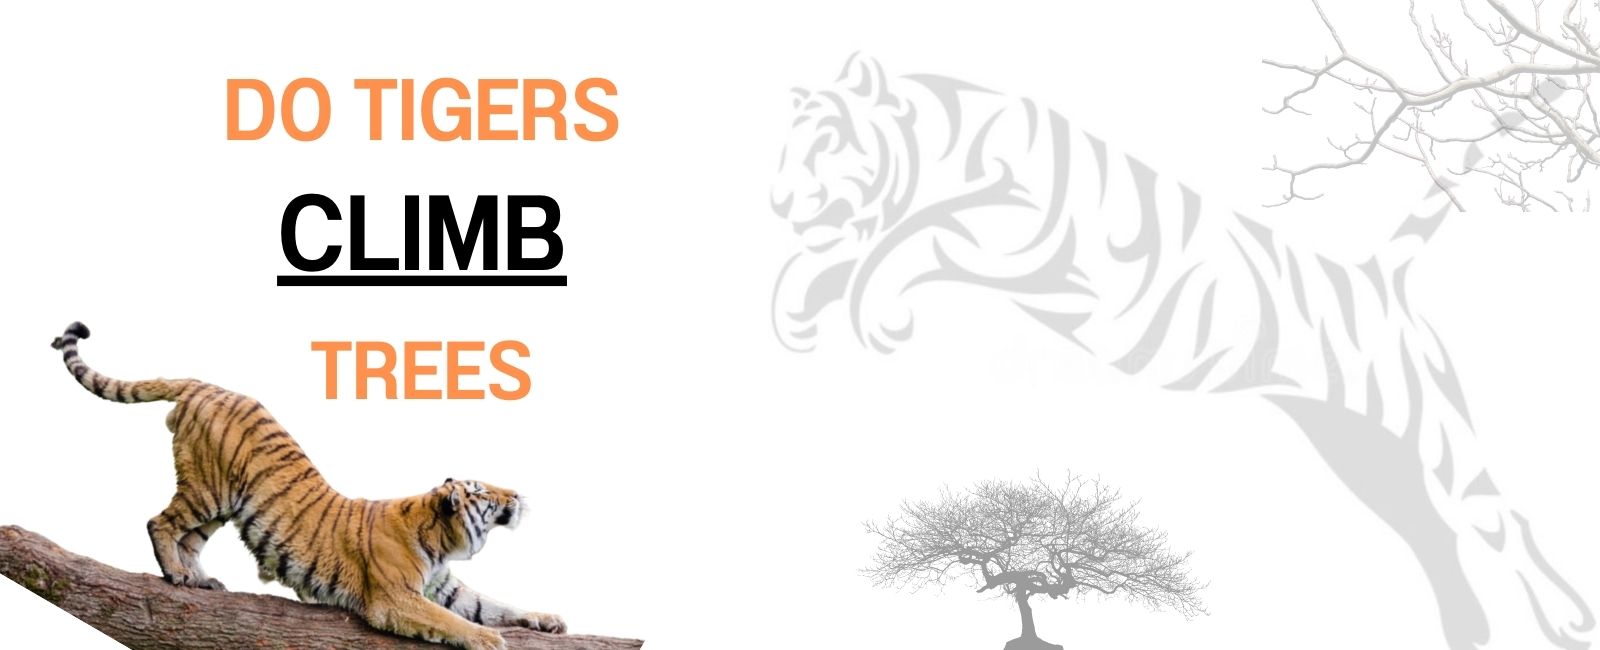 Do tigers climb trees ?